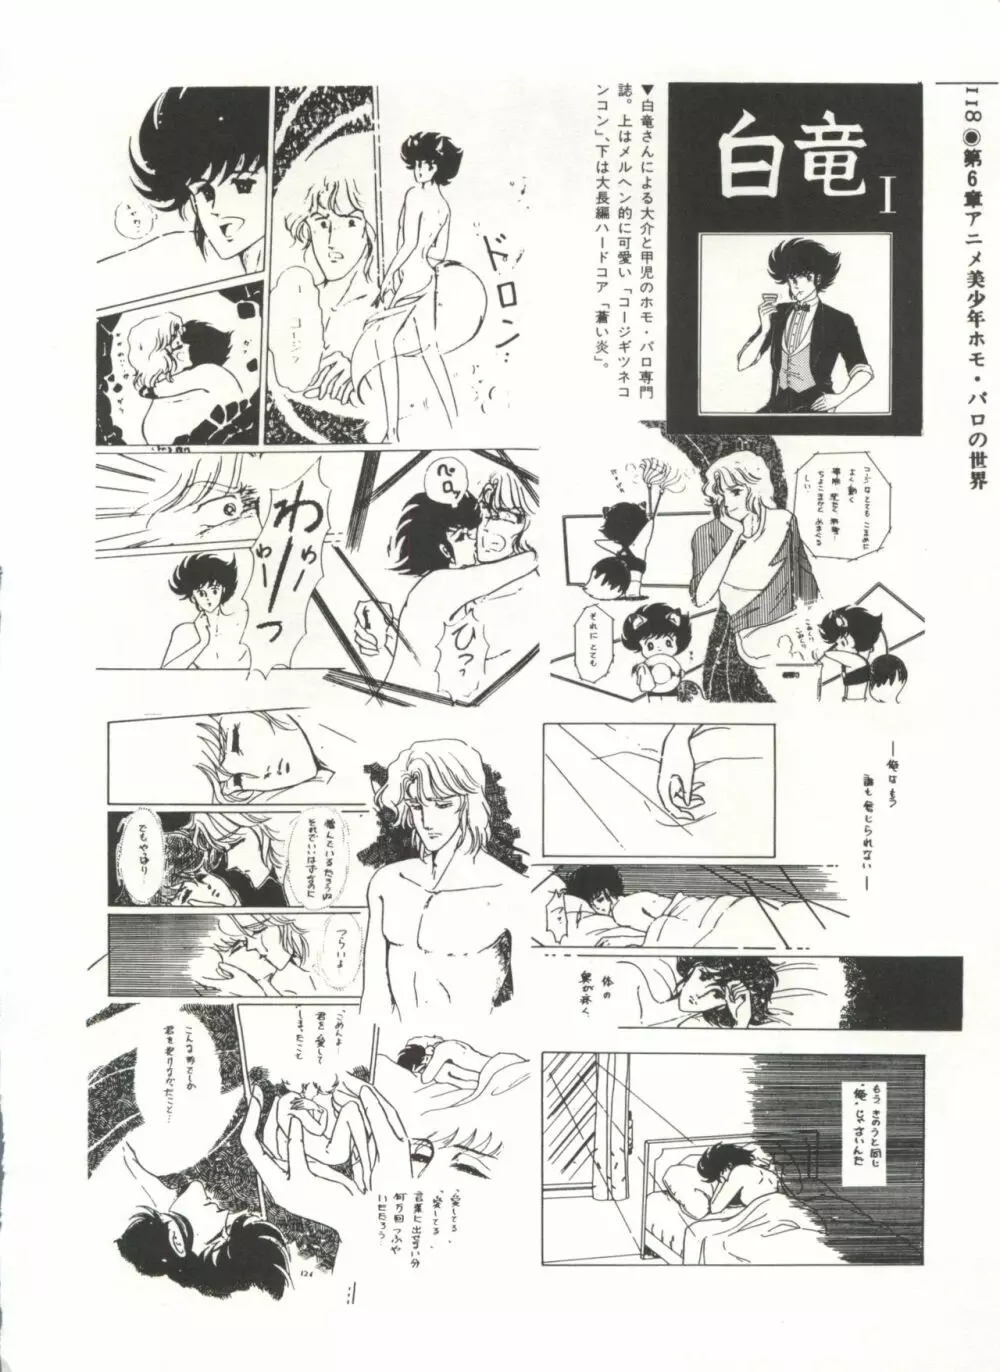 [Anthology] 美少女症候群(2) Lolita syndrome (よろず) 121ページ